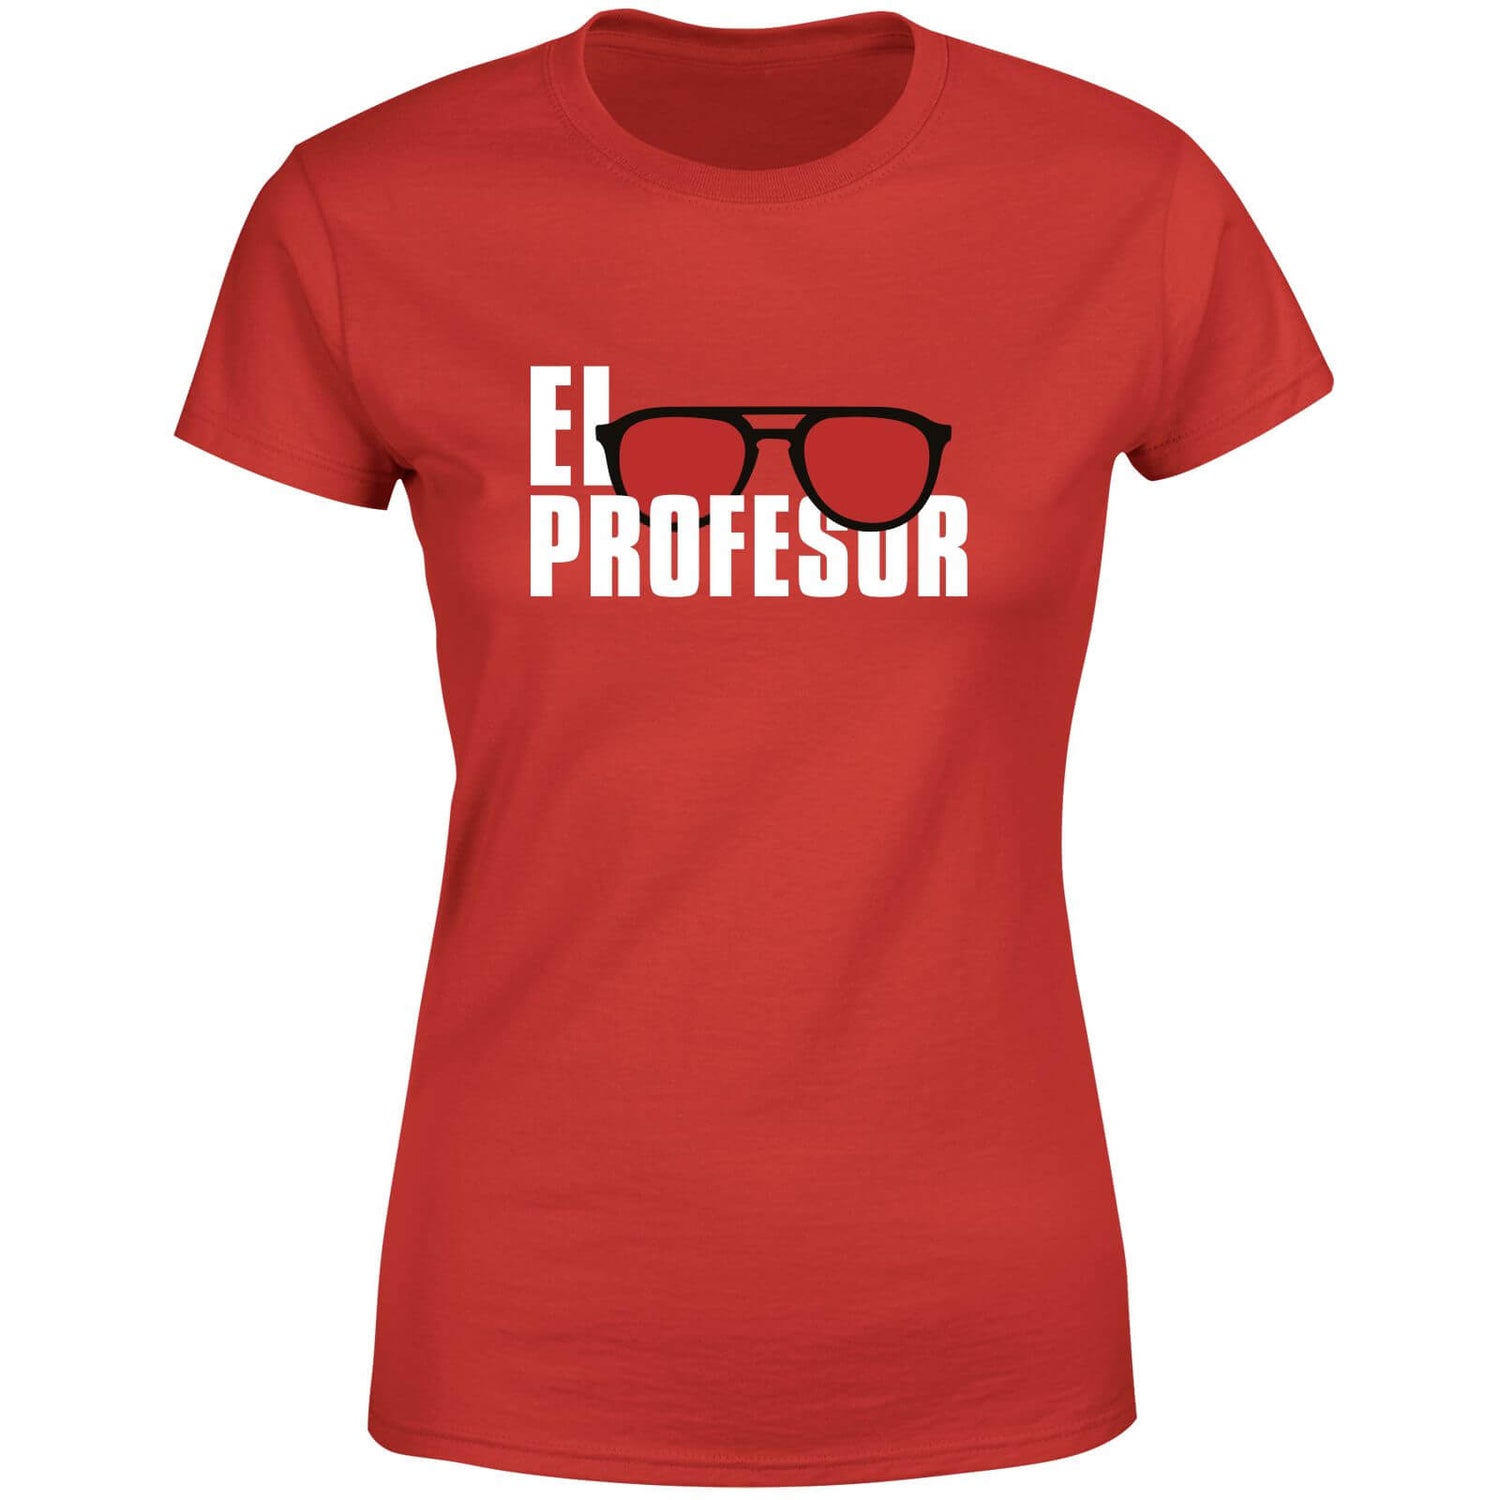 Money Heist El Profesor Women's T-Shirt - Rood